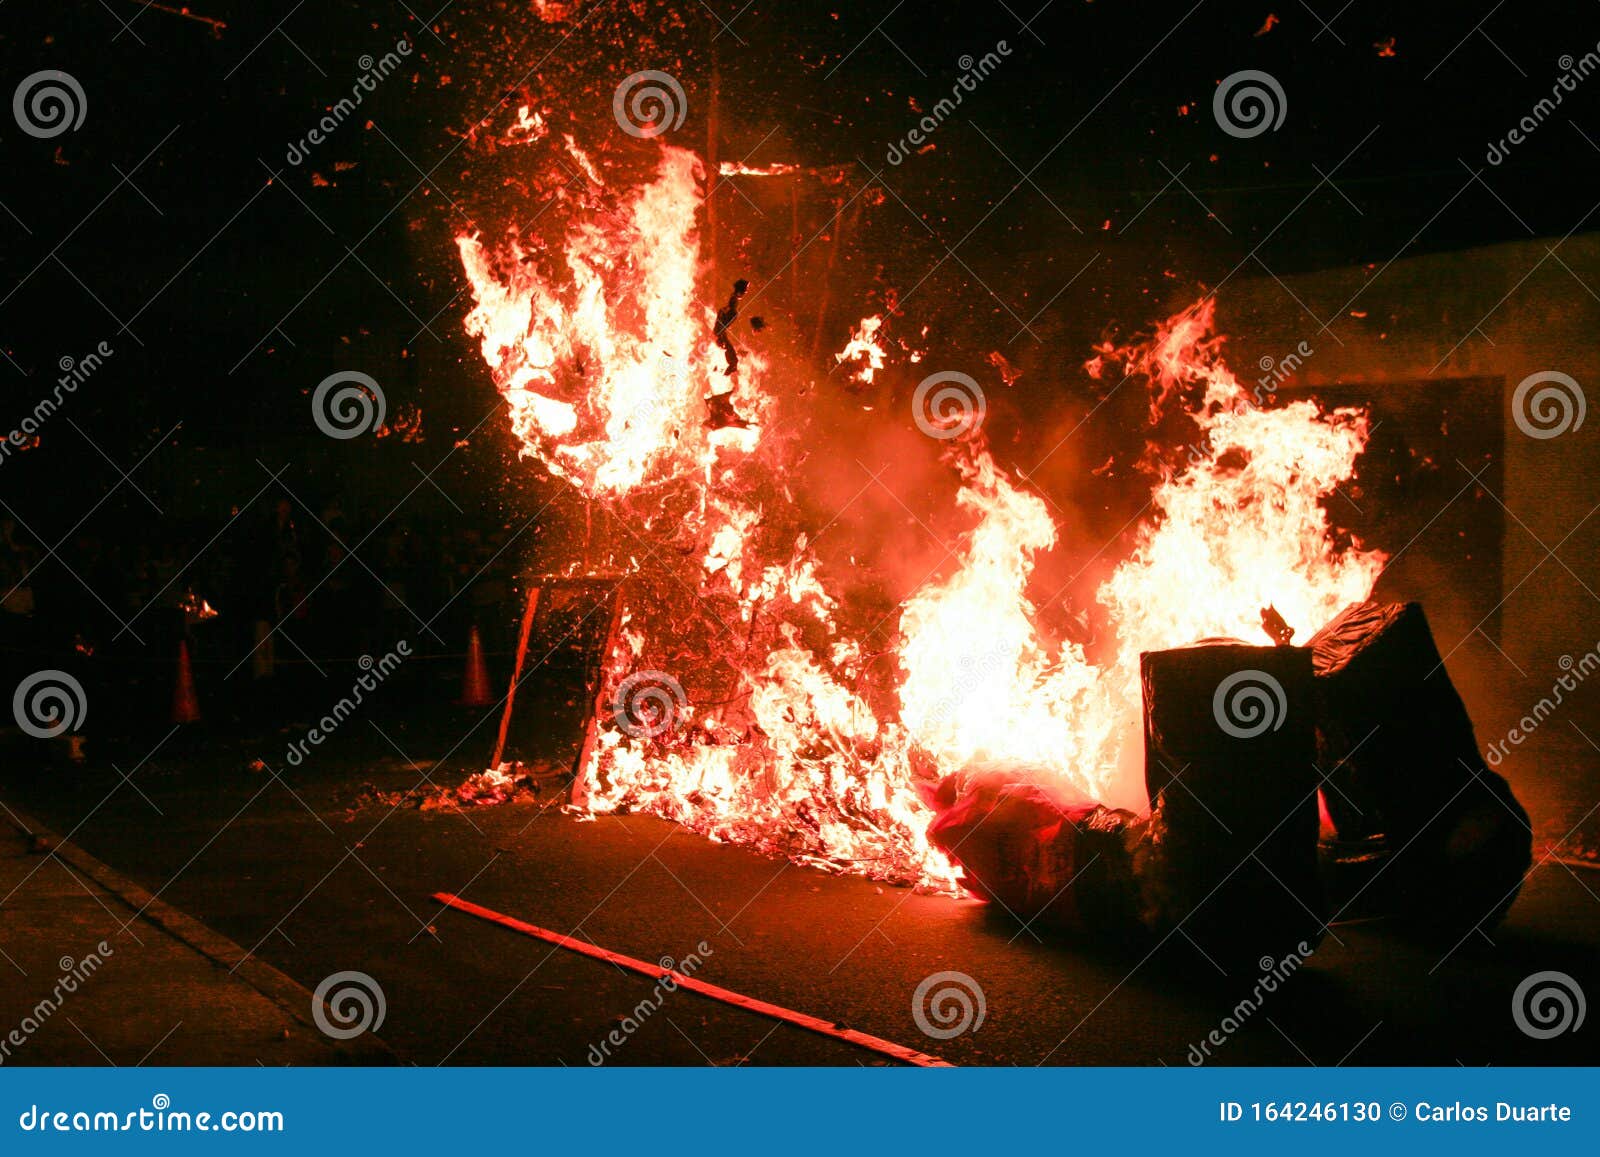 Burning the Devil in Guatemala